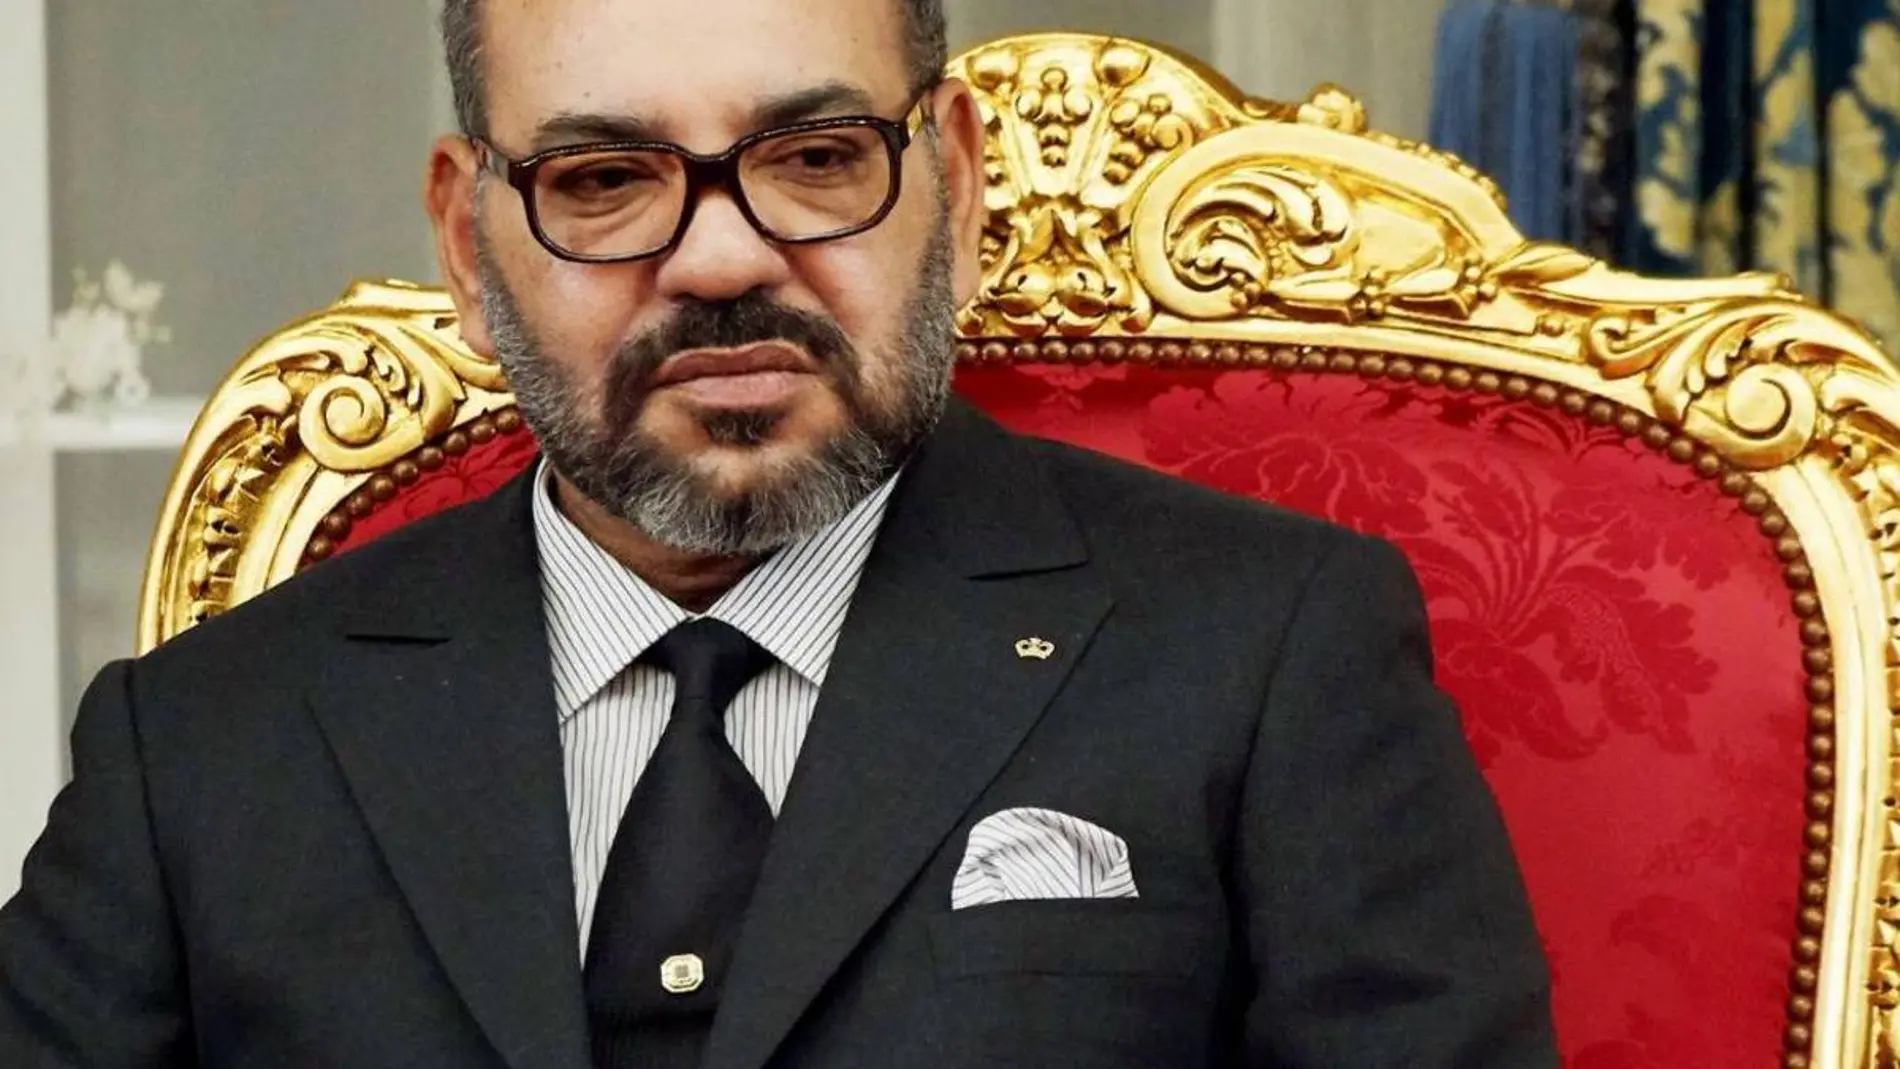 El Rey de Marruecos espera &quot;retomar la relación con España&quot; tras las tensiones de los últimos meses